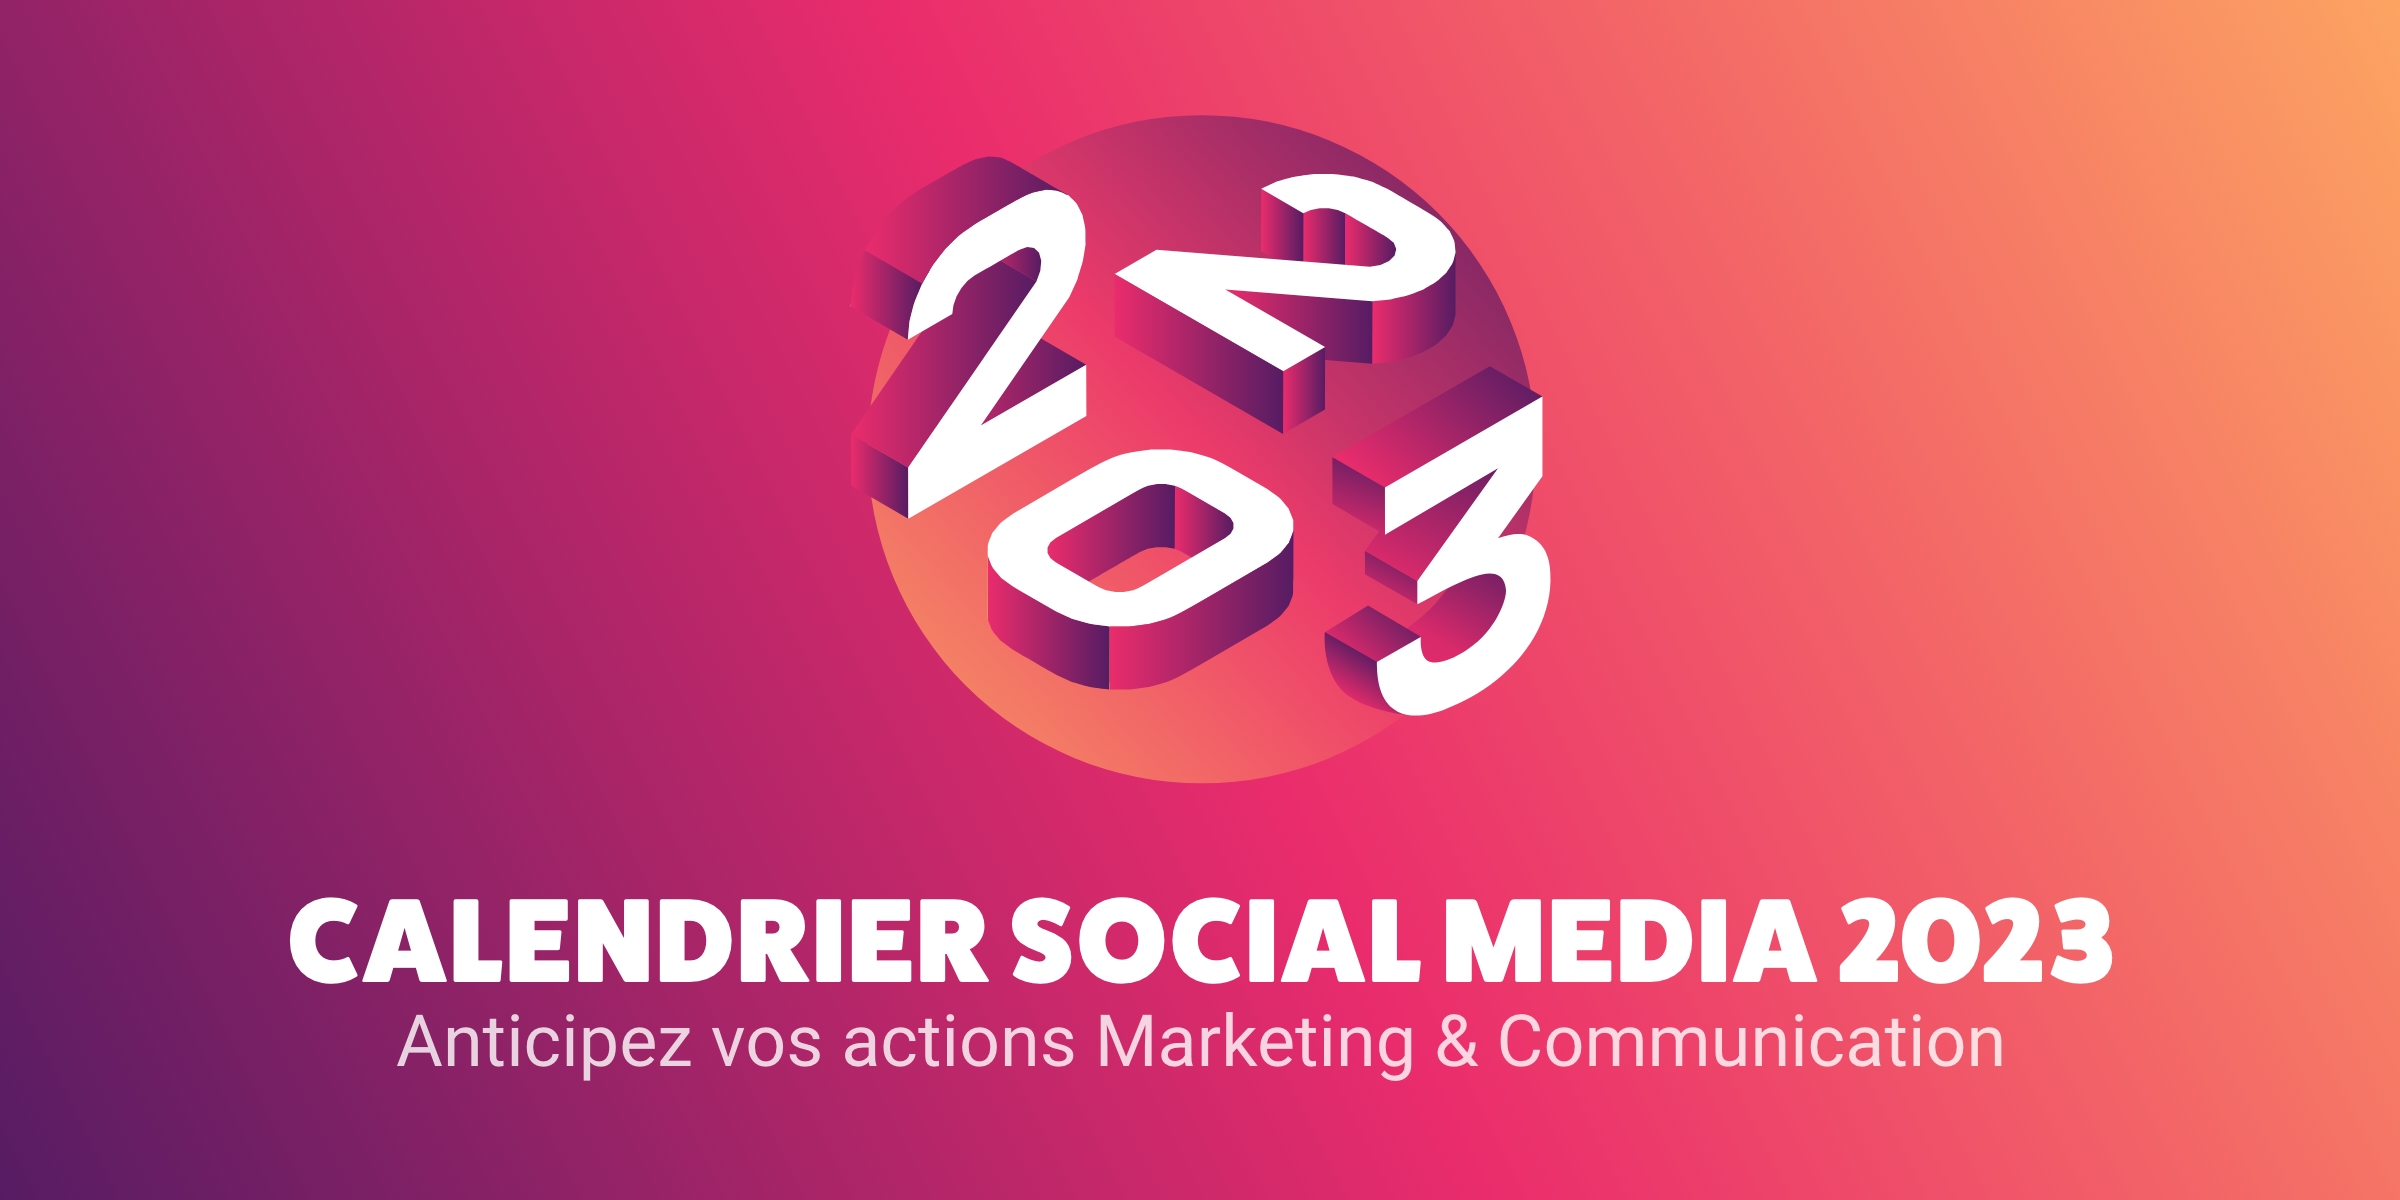 Calendrier Social Media 2022 : découvrez tous les marronniers de l'année !